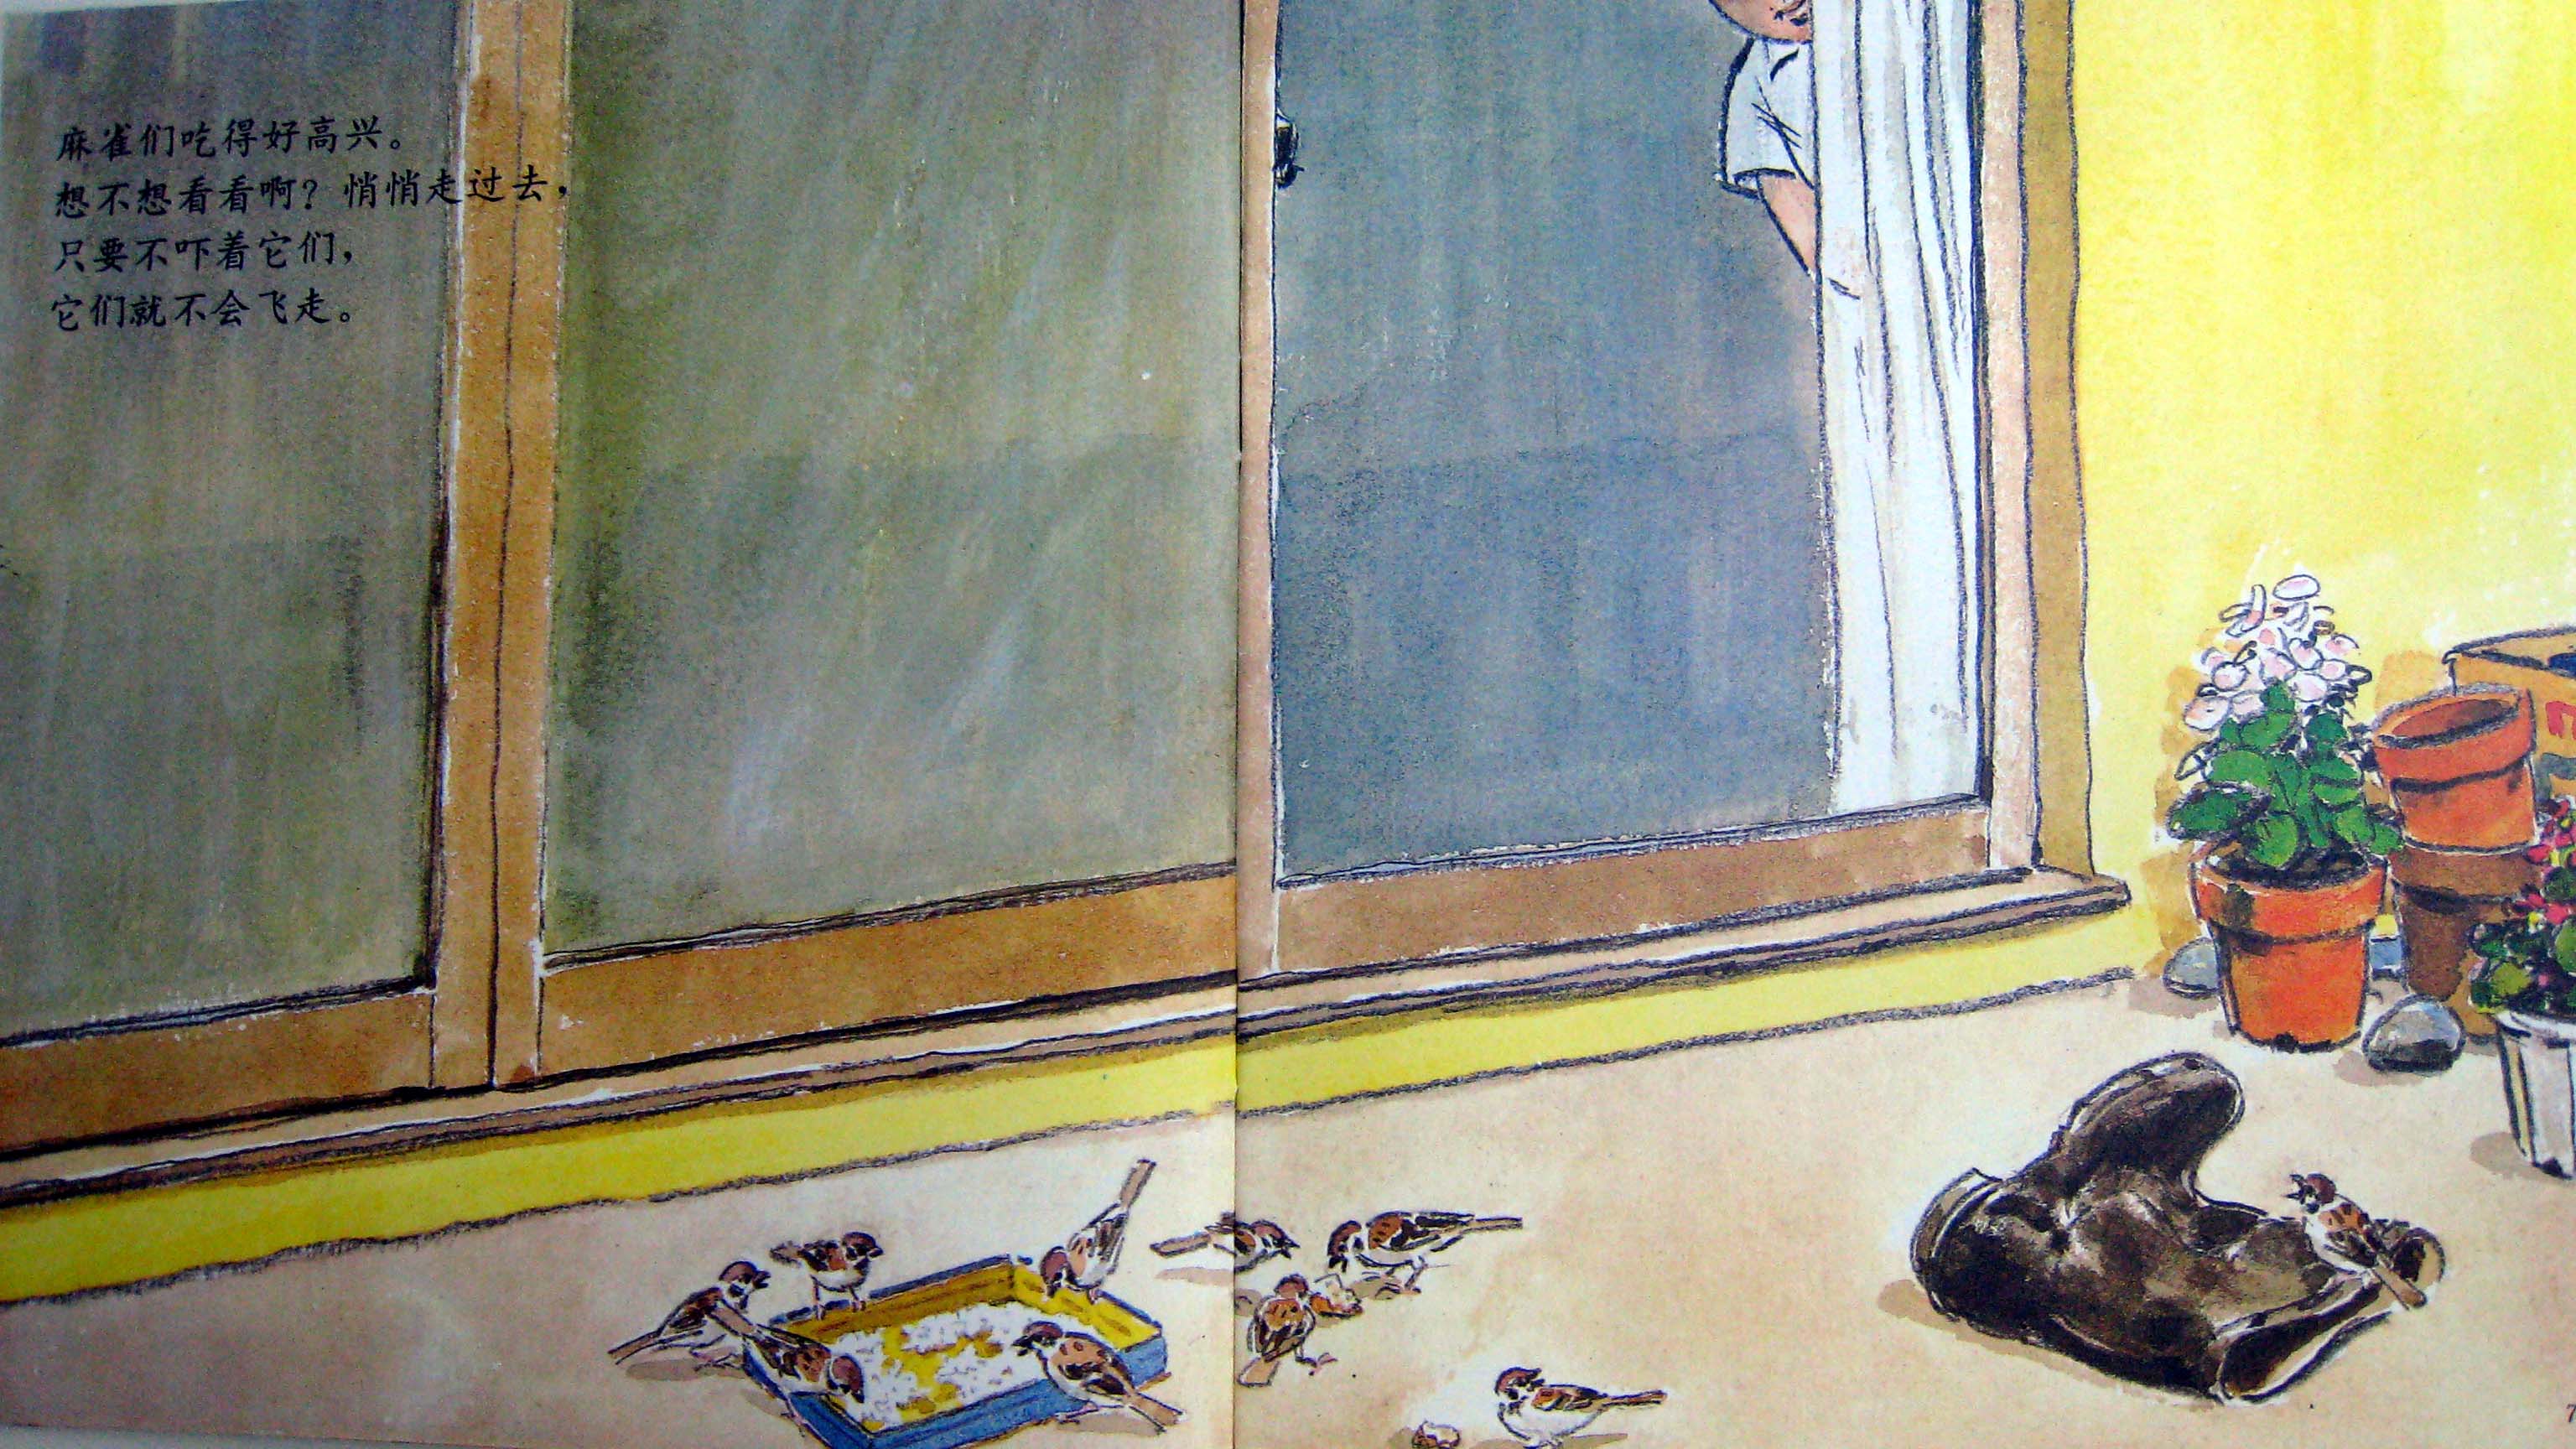 雨靴里的麻雀 (05),绘本,绘本故事,绘本阅读,故事书,童书,图画书,课外阅读